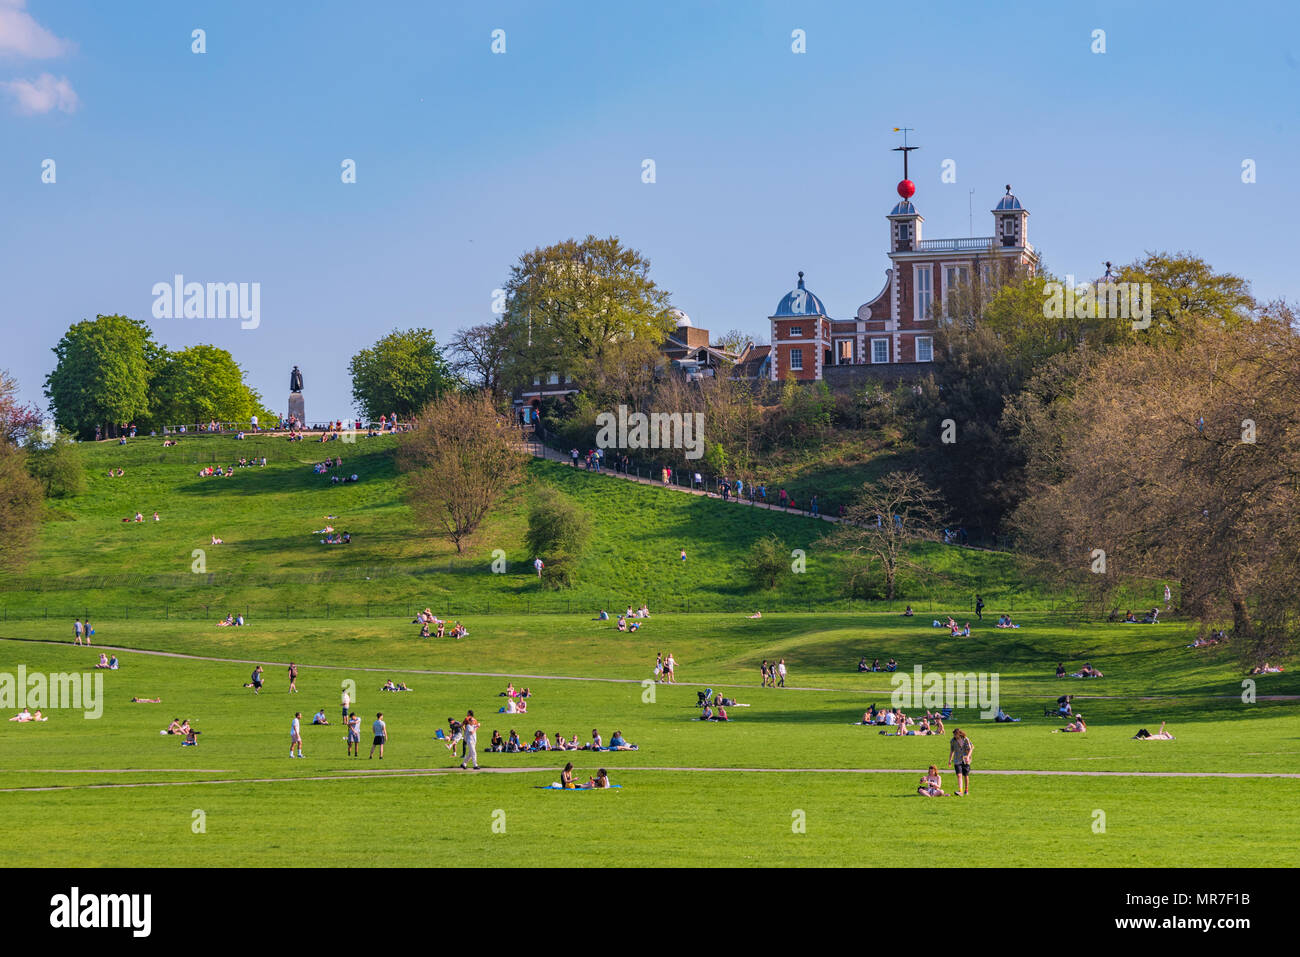 LONDON, Großbritannien - 20 April: Blick auf Greenwich Park, ein berühmter Park und Reiseziel in London am 20. April 2018 in London. Stockfoto